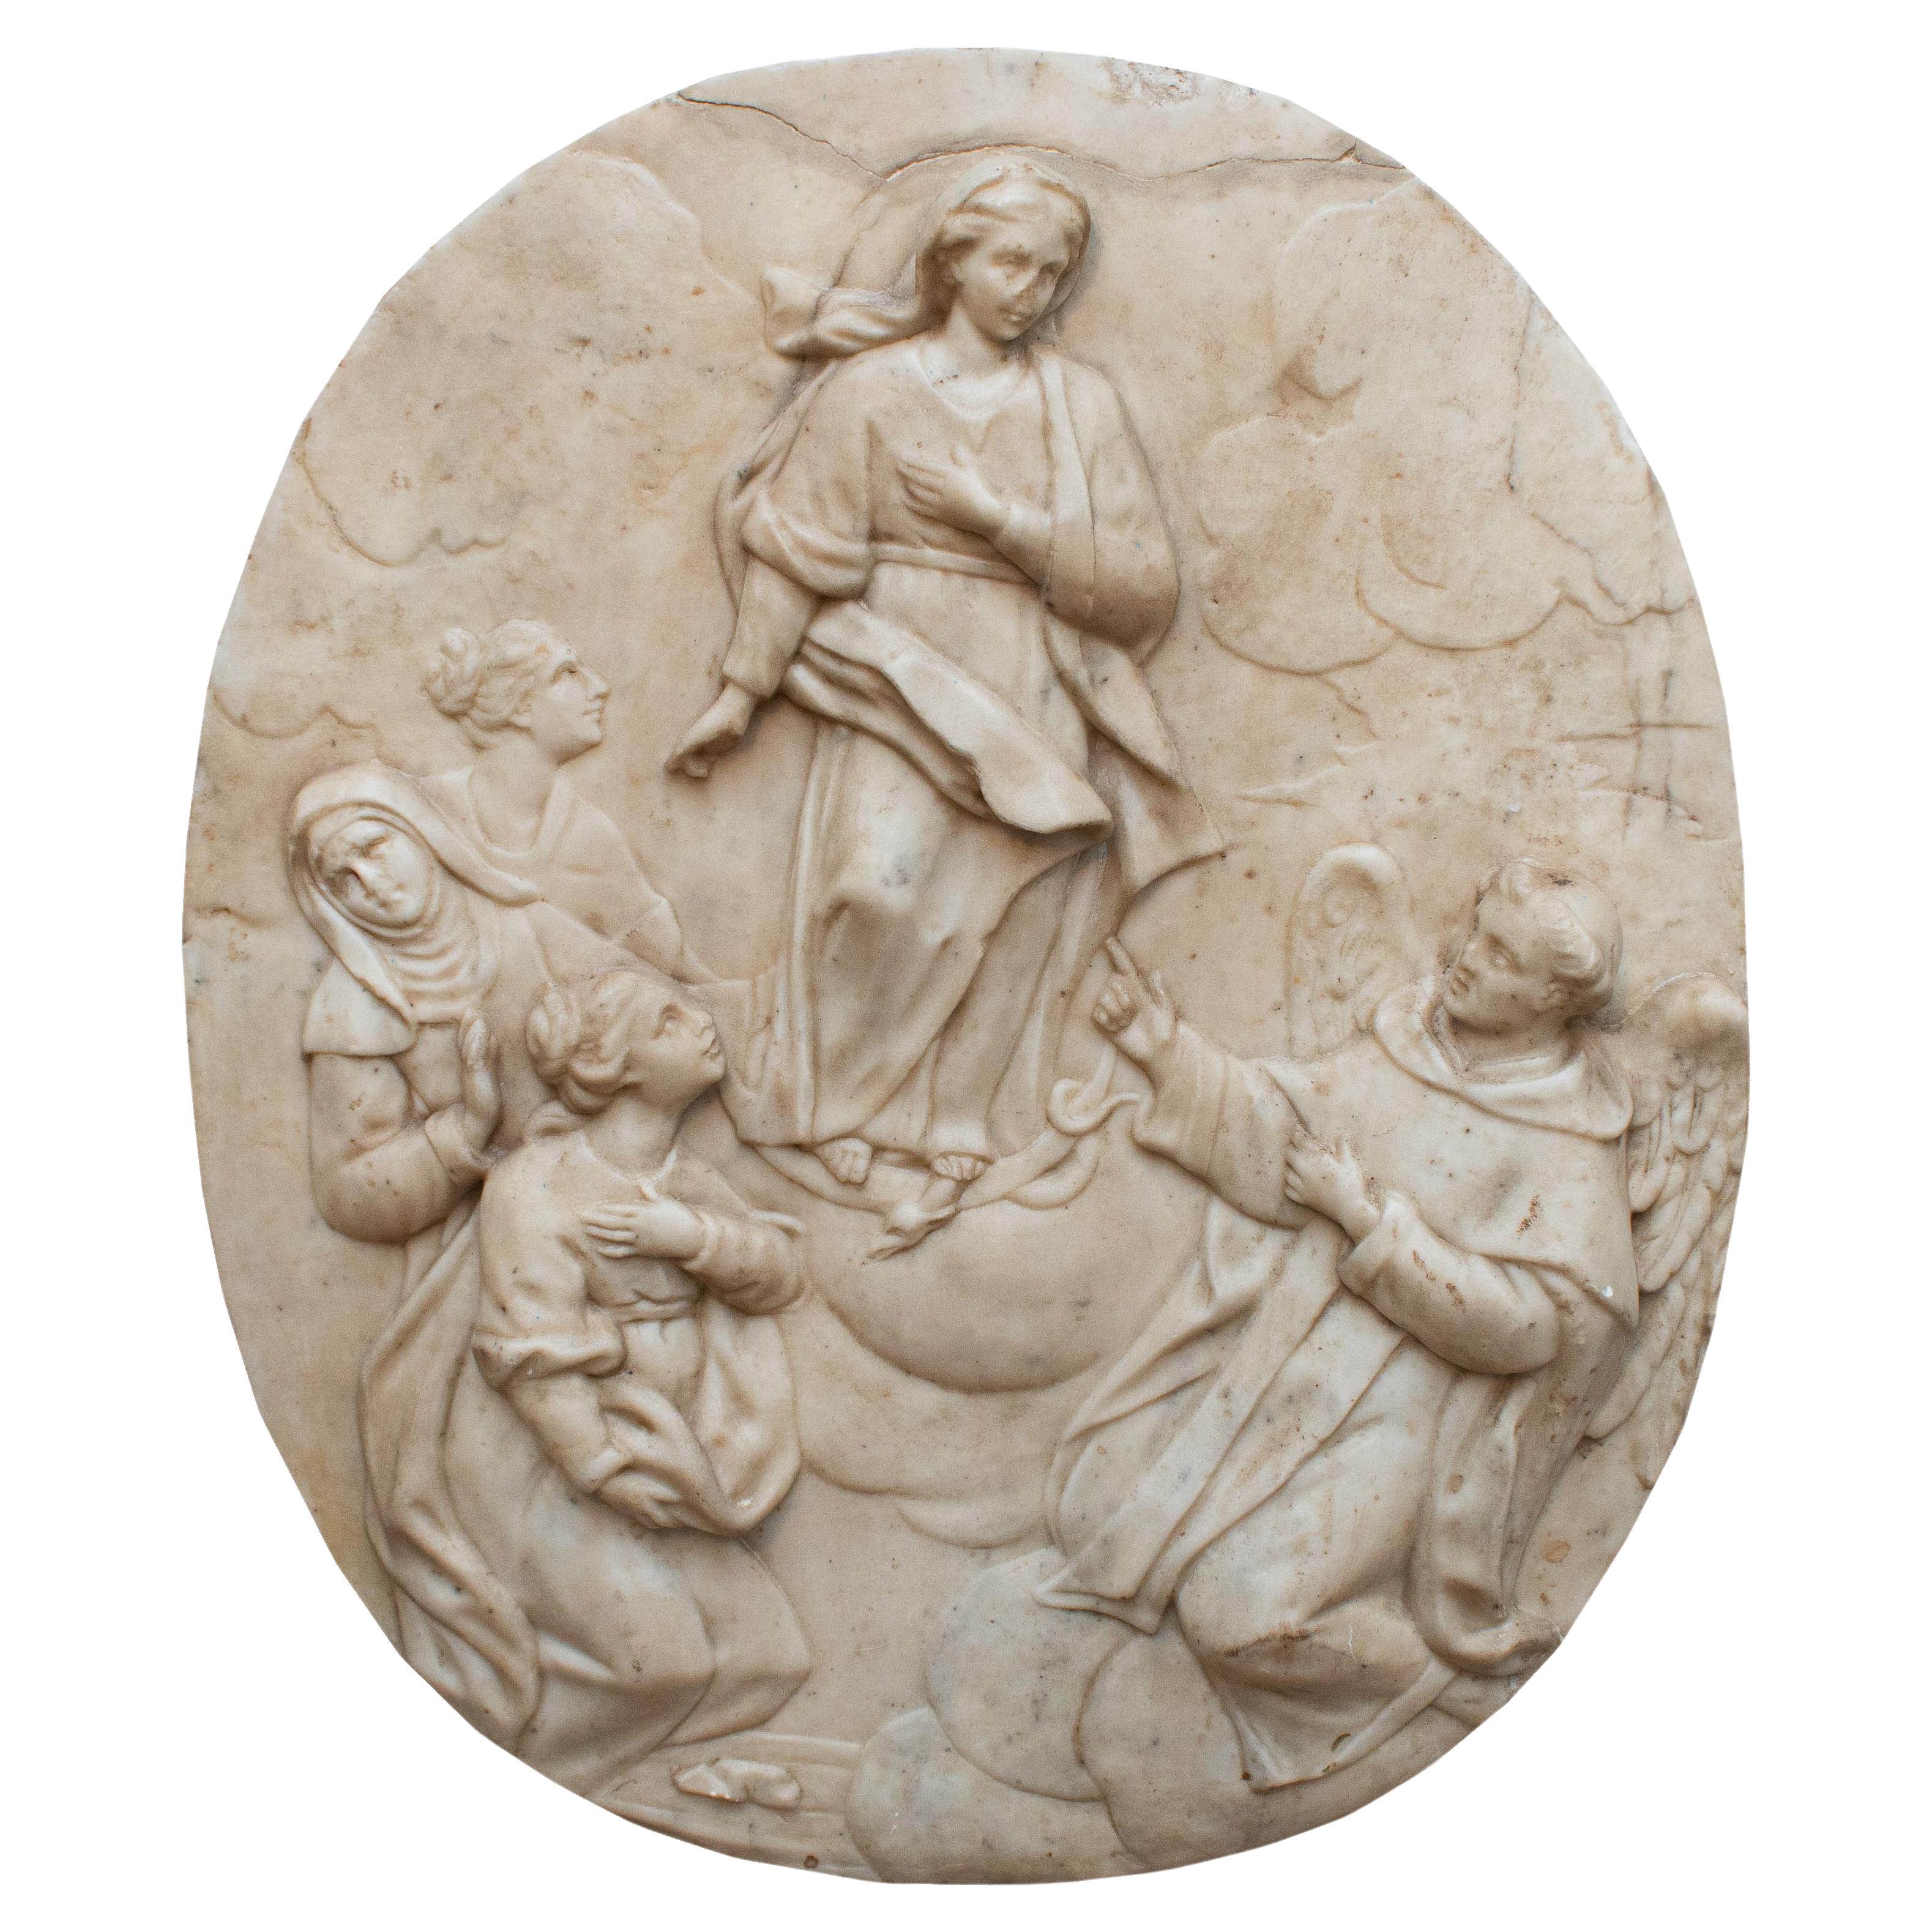 Conception immaculée avec sculpture de saints du 18ème siècle